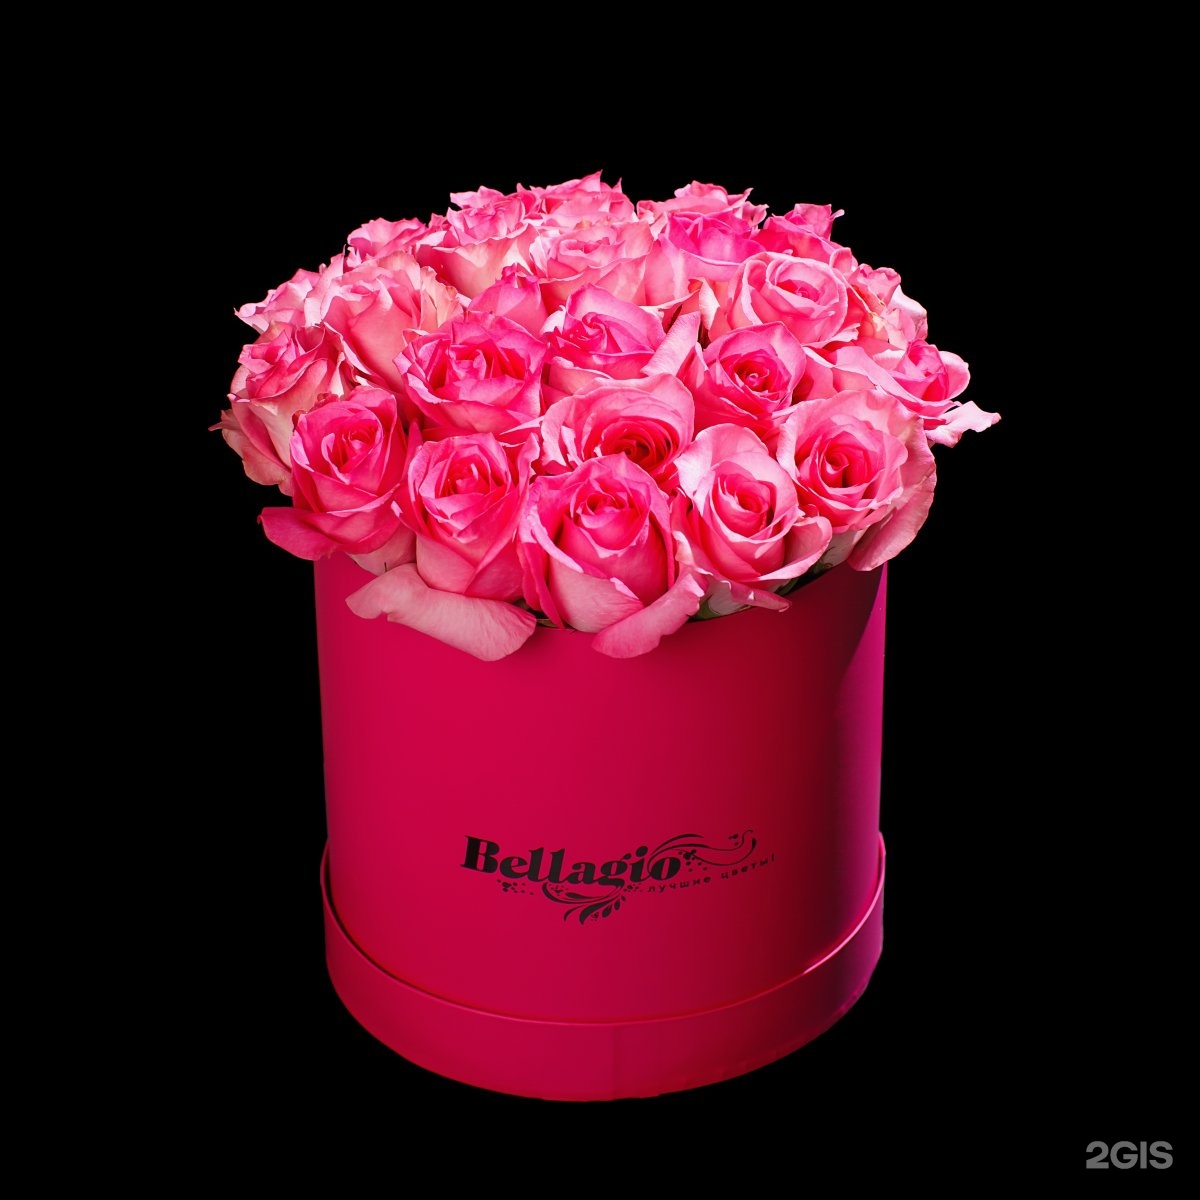 Доставка цветов тюмень недорого с бесплатной. Цветы в шляпной коробке розы. Белладжио цветы в коробке. Цветы Тюмень. Цветочный в Тюмени.